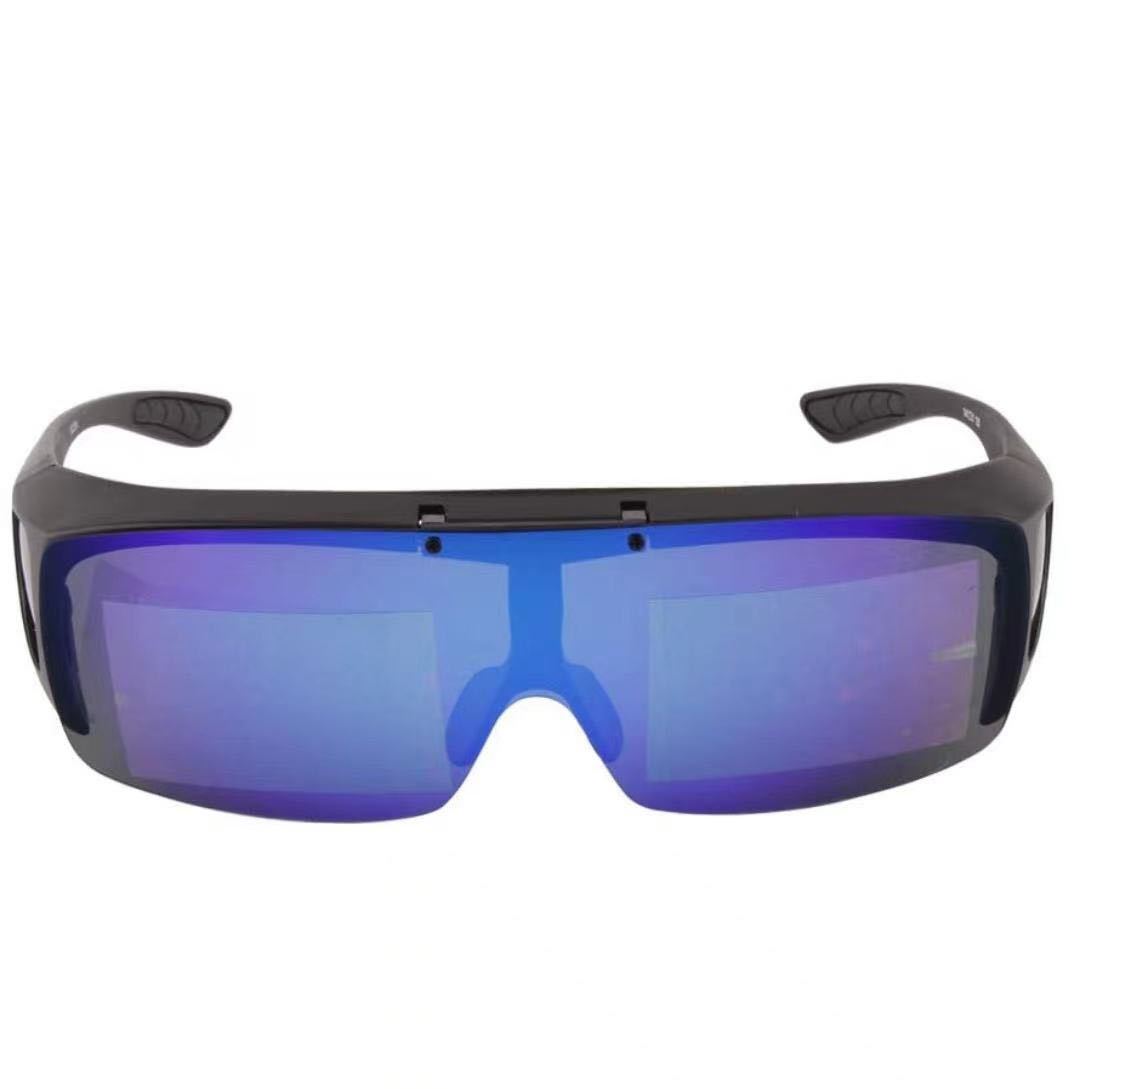 オーバーサングラス 跳ね上げ式デザイン 偏光レンズ ース UV400 紫外線カット サイクリング、釣り、ランニング、野球 ブルー